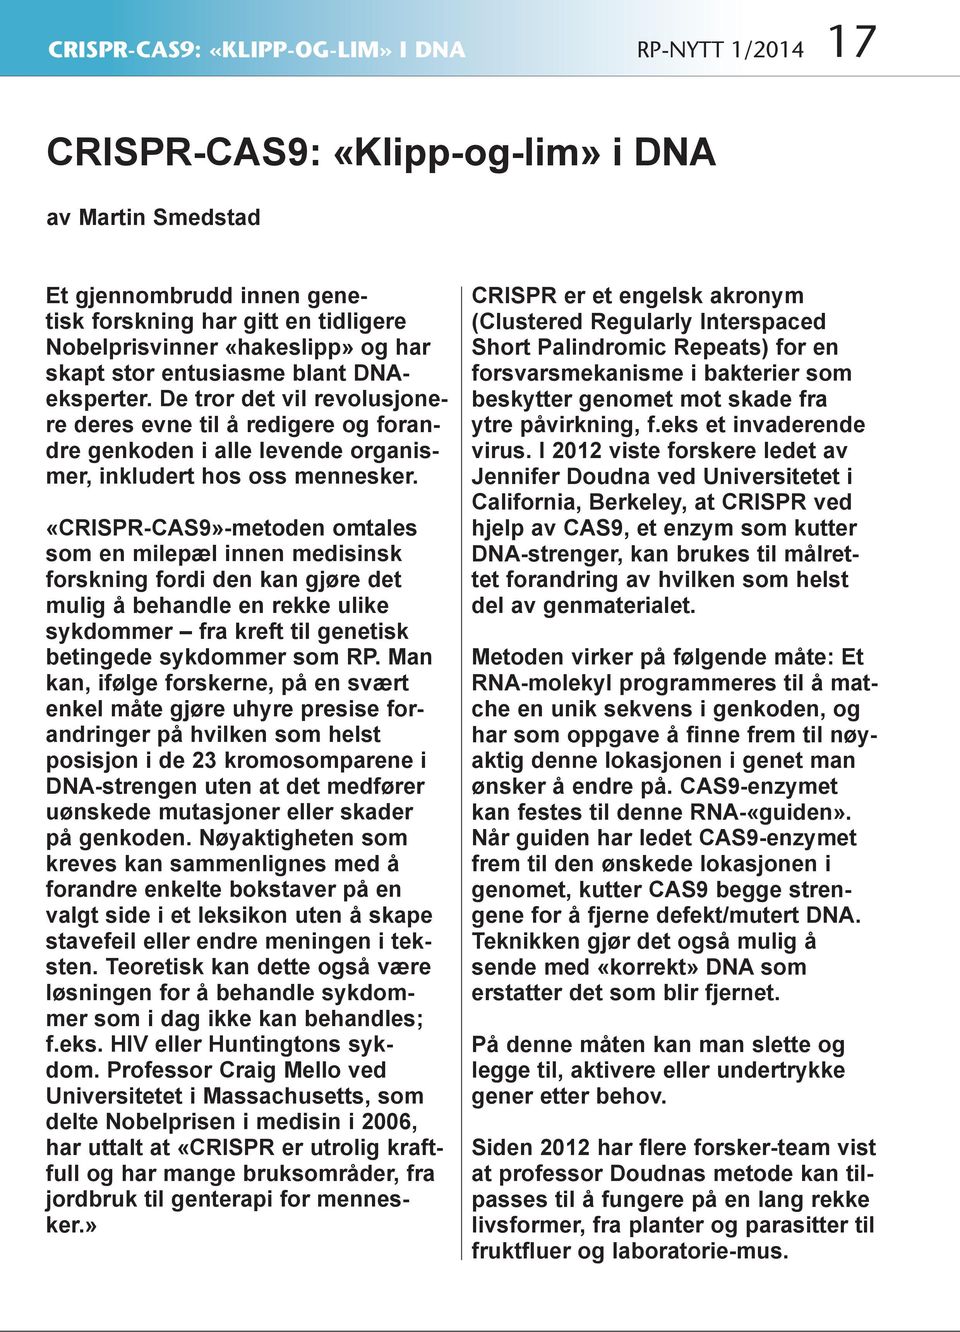 «CRISPR-CAS9»-metoden omtales som en milepæl innen medisinsk forskning fordi den kan gjøre det mulig å behandle en rekke ulike sykdommer fra kreft til genetisk betingede sykdommer som RP.